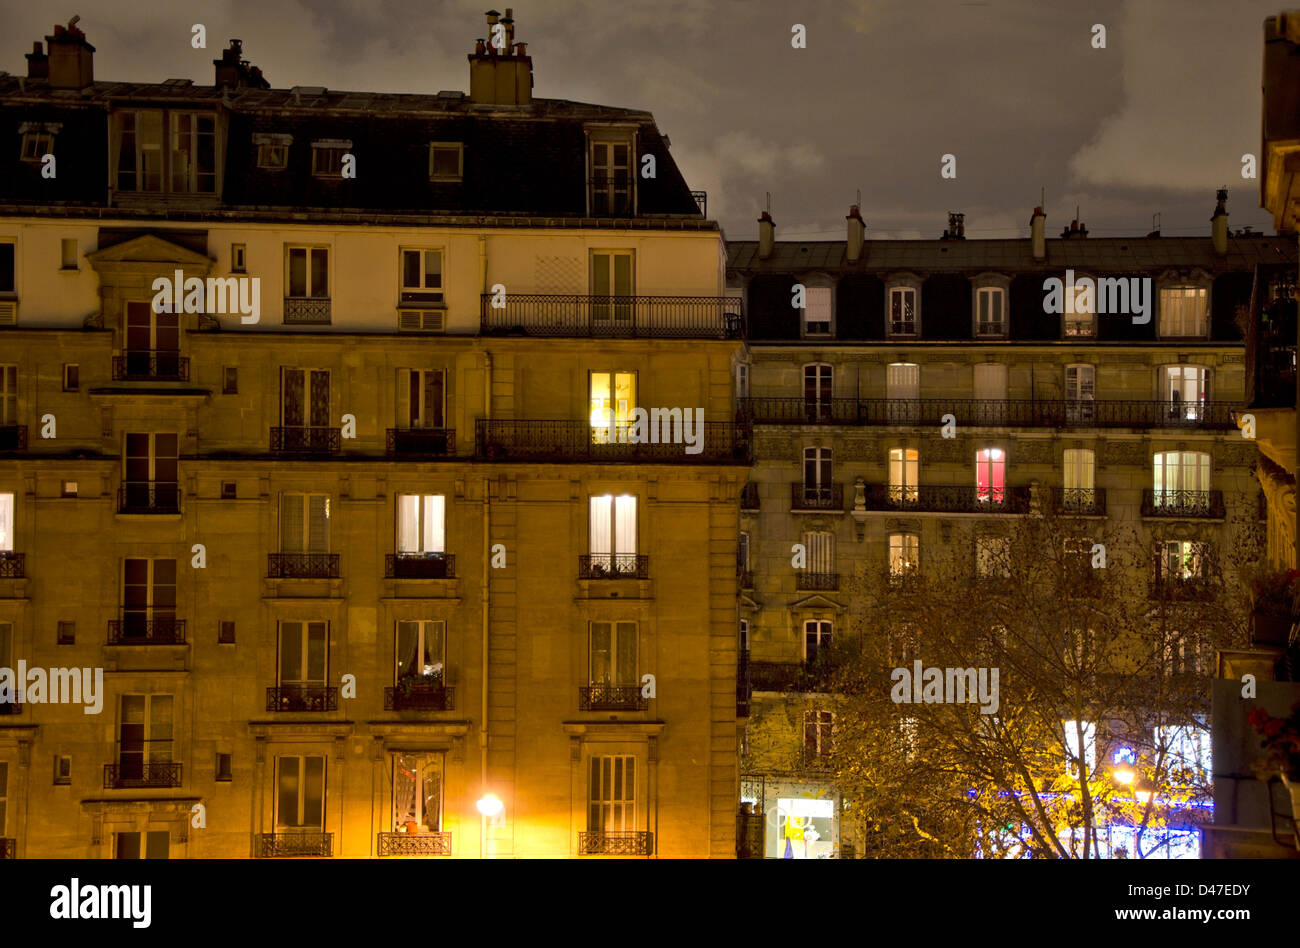 Typischen Haussmannschen Architektur Paris Gebäude in der Nacht, Paris, Frankreich. Stockfoto